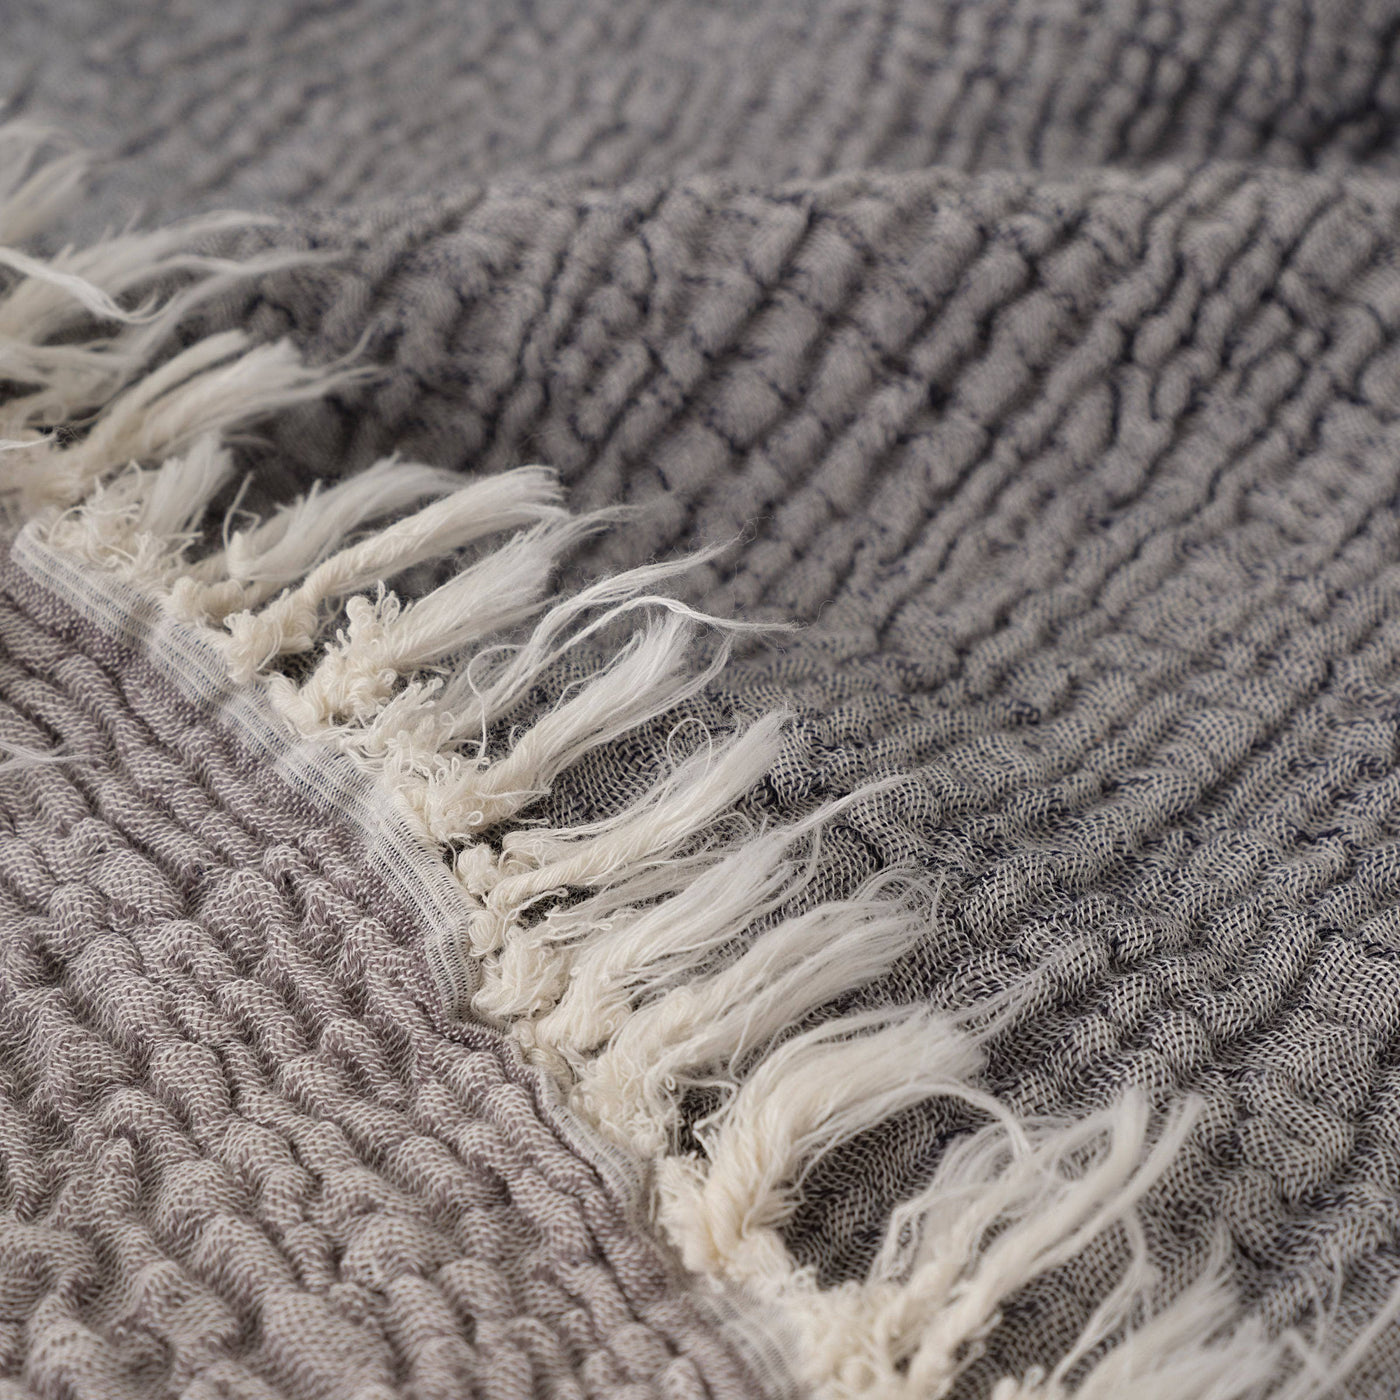 Birch Textured 100% Turkish Cotton Bedspread, Grey, 250x260 cm Blankets & Bedspreads sazy.com